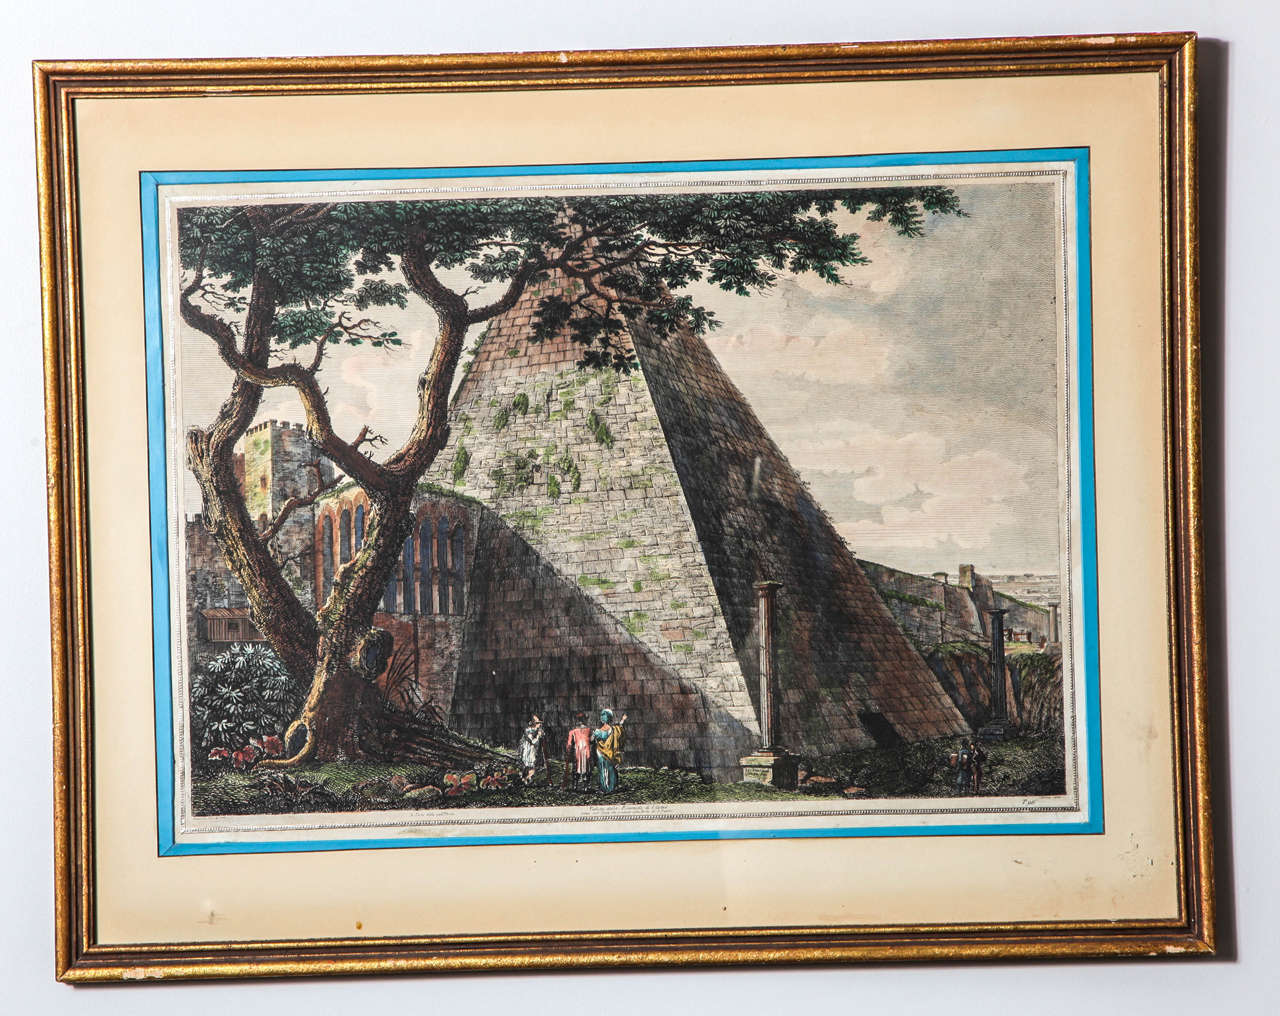 Malerischer Stich von 1822 der als Grabmal für Gaius Cestius errichteten Pyramide, ca. 18 v. Chr. Luigi Rossini (1790-1857) war ein italienischer Künstler, der für seine Ansichten der antiken römischen Architektur bekannt war. Dieser Kupferstich aus